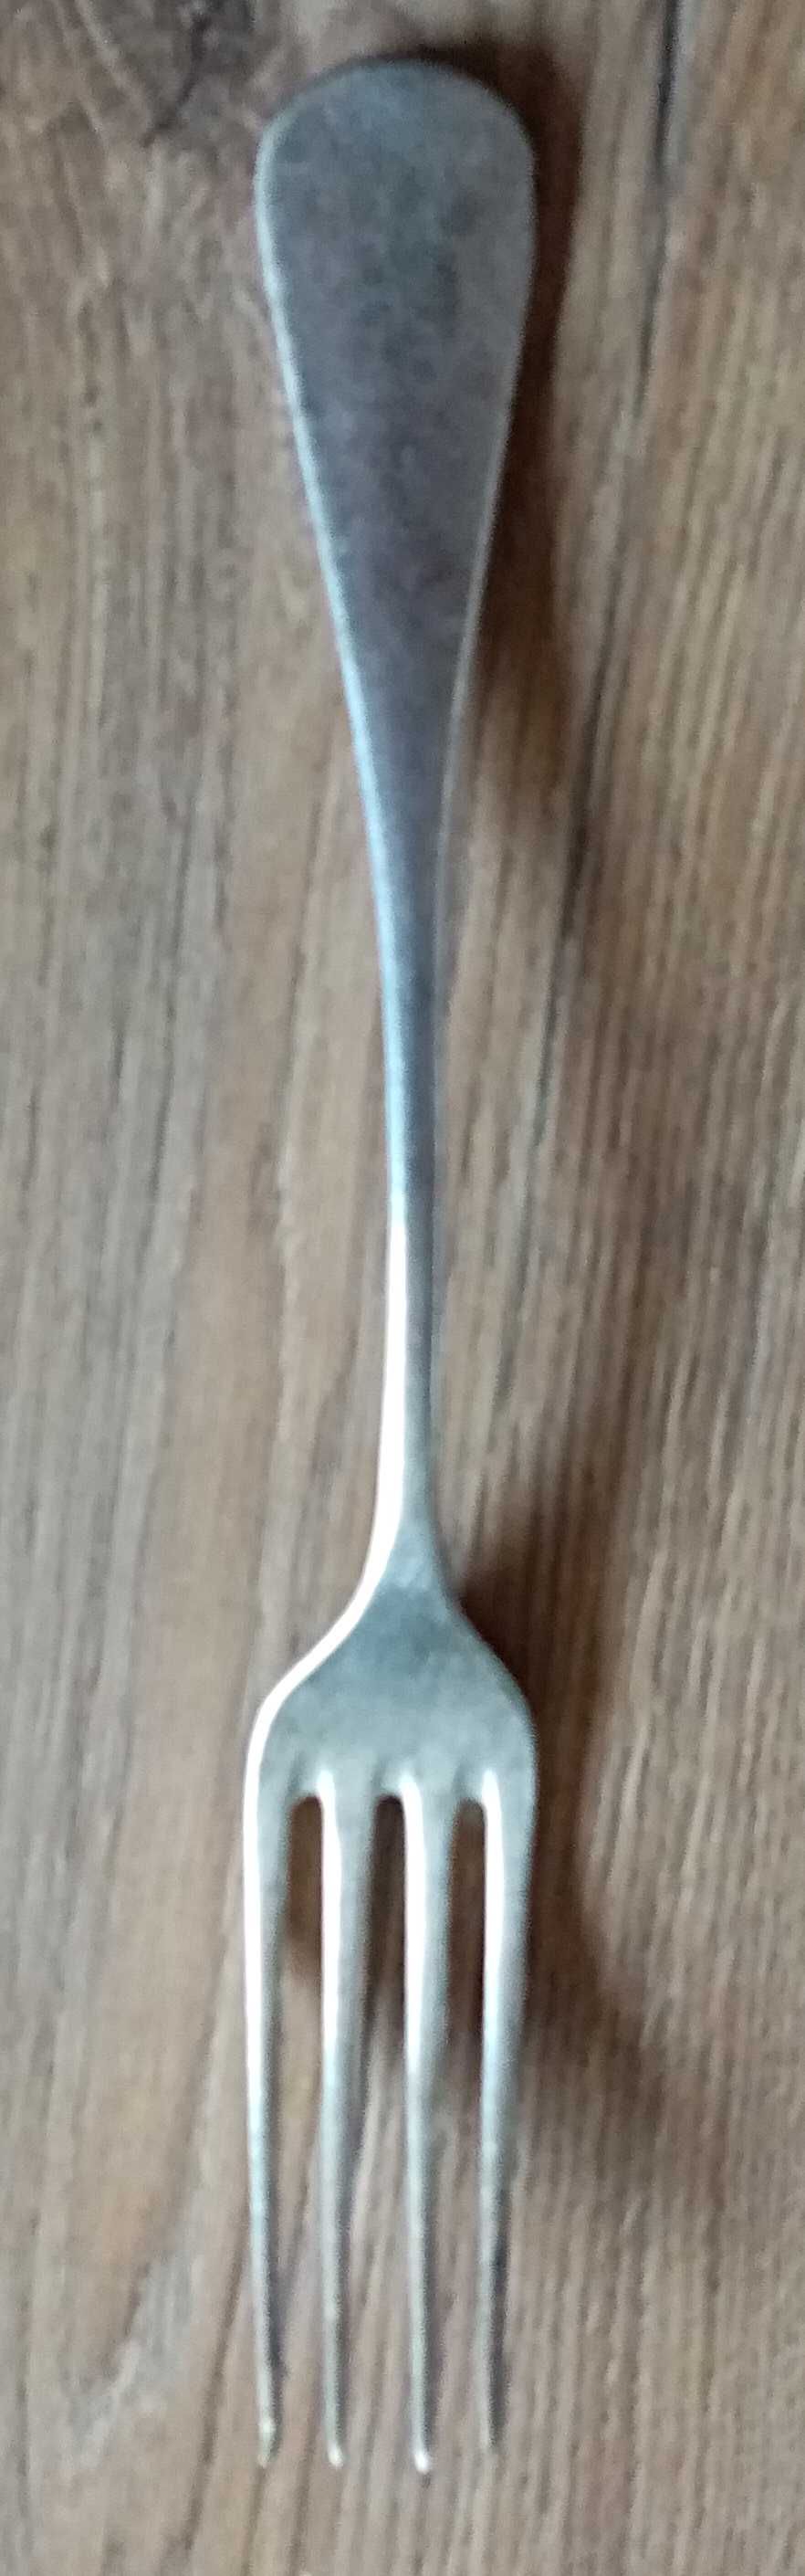 srebrny / posrebrzany widelec, 21 cm